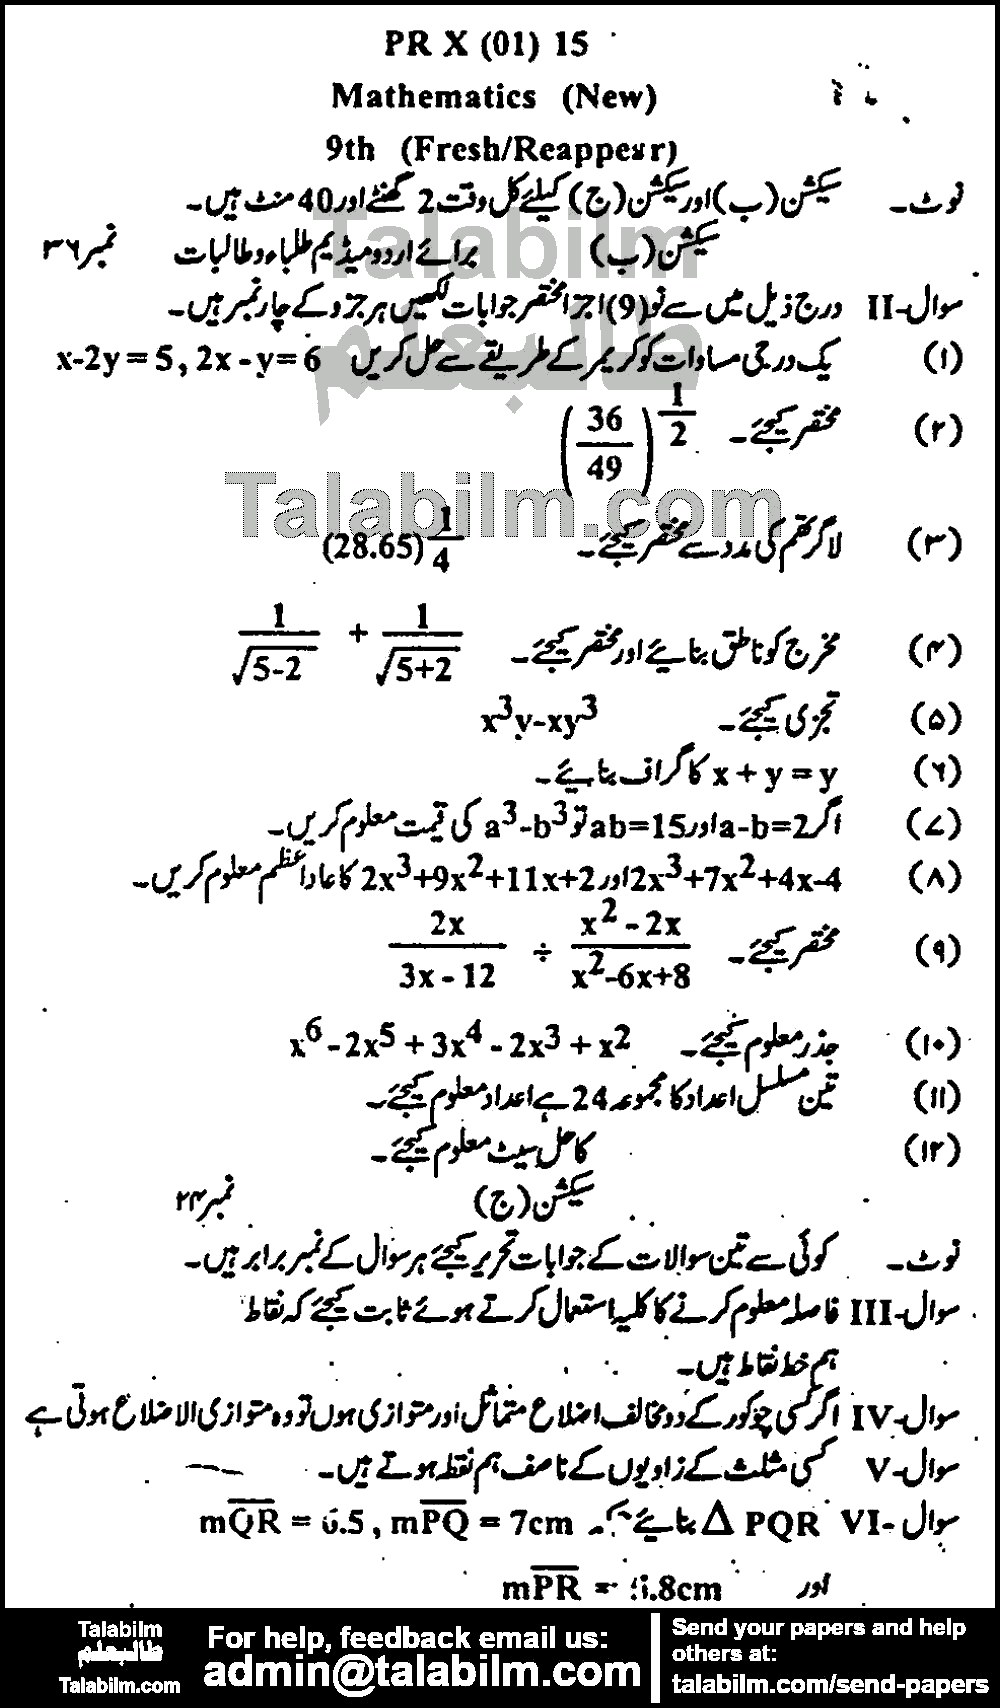 Math 0 past paper for Urdu Medium 2015 Group-I